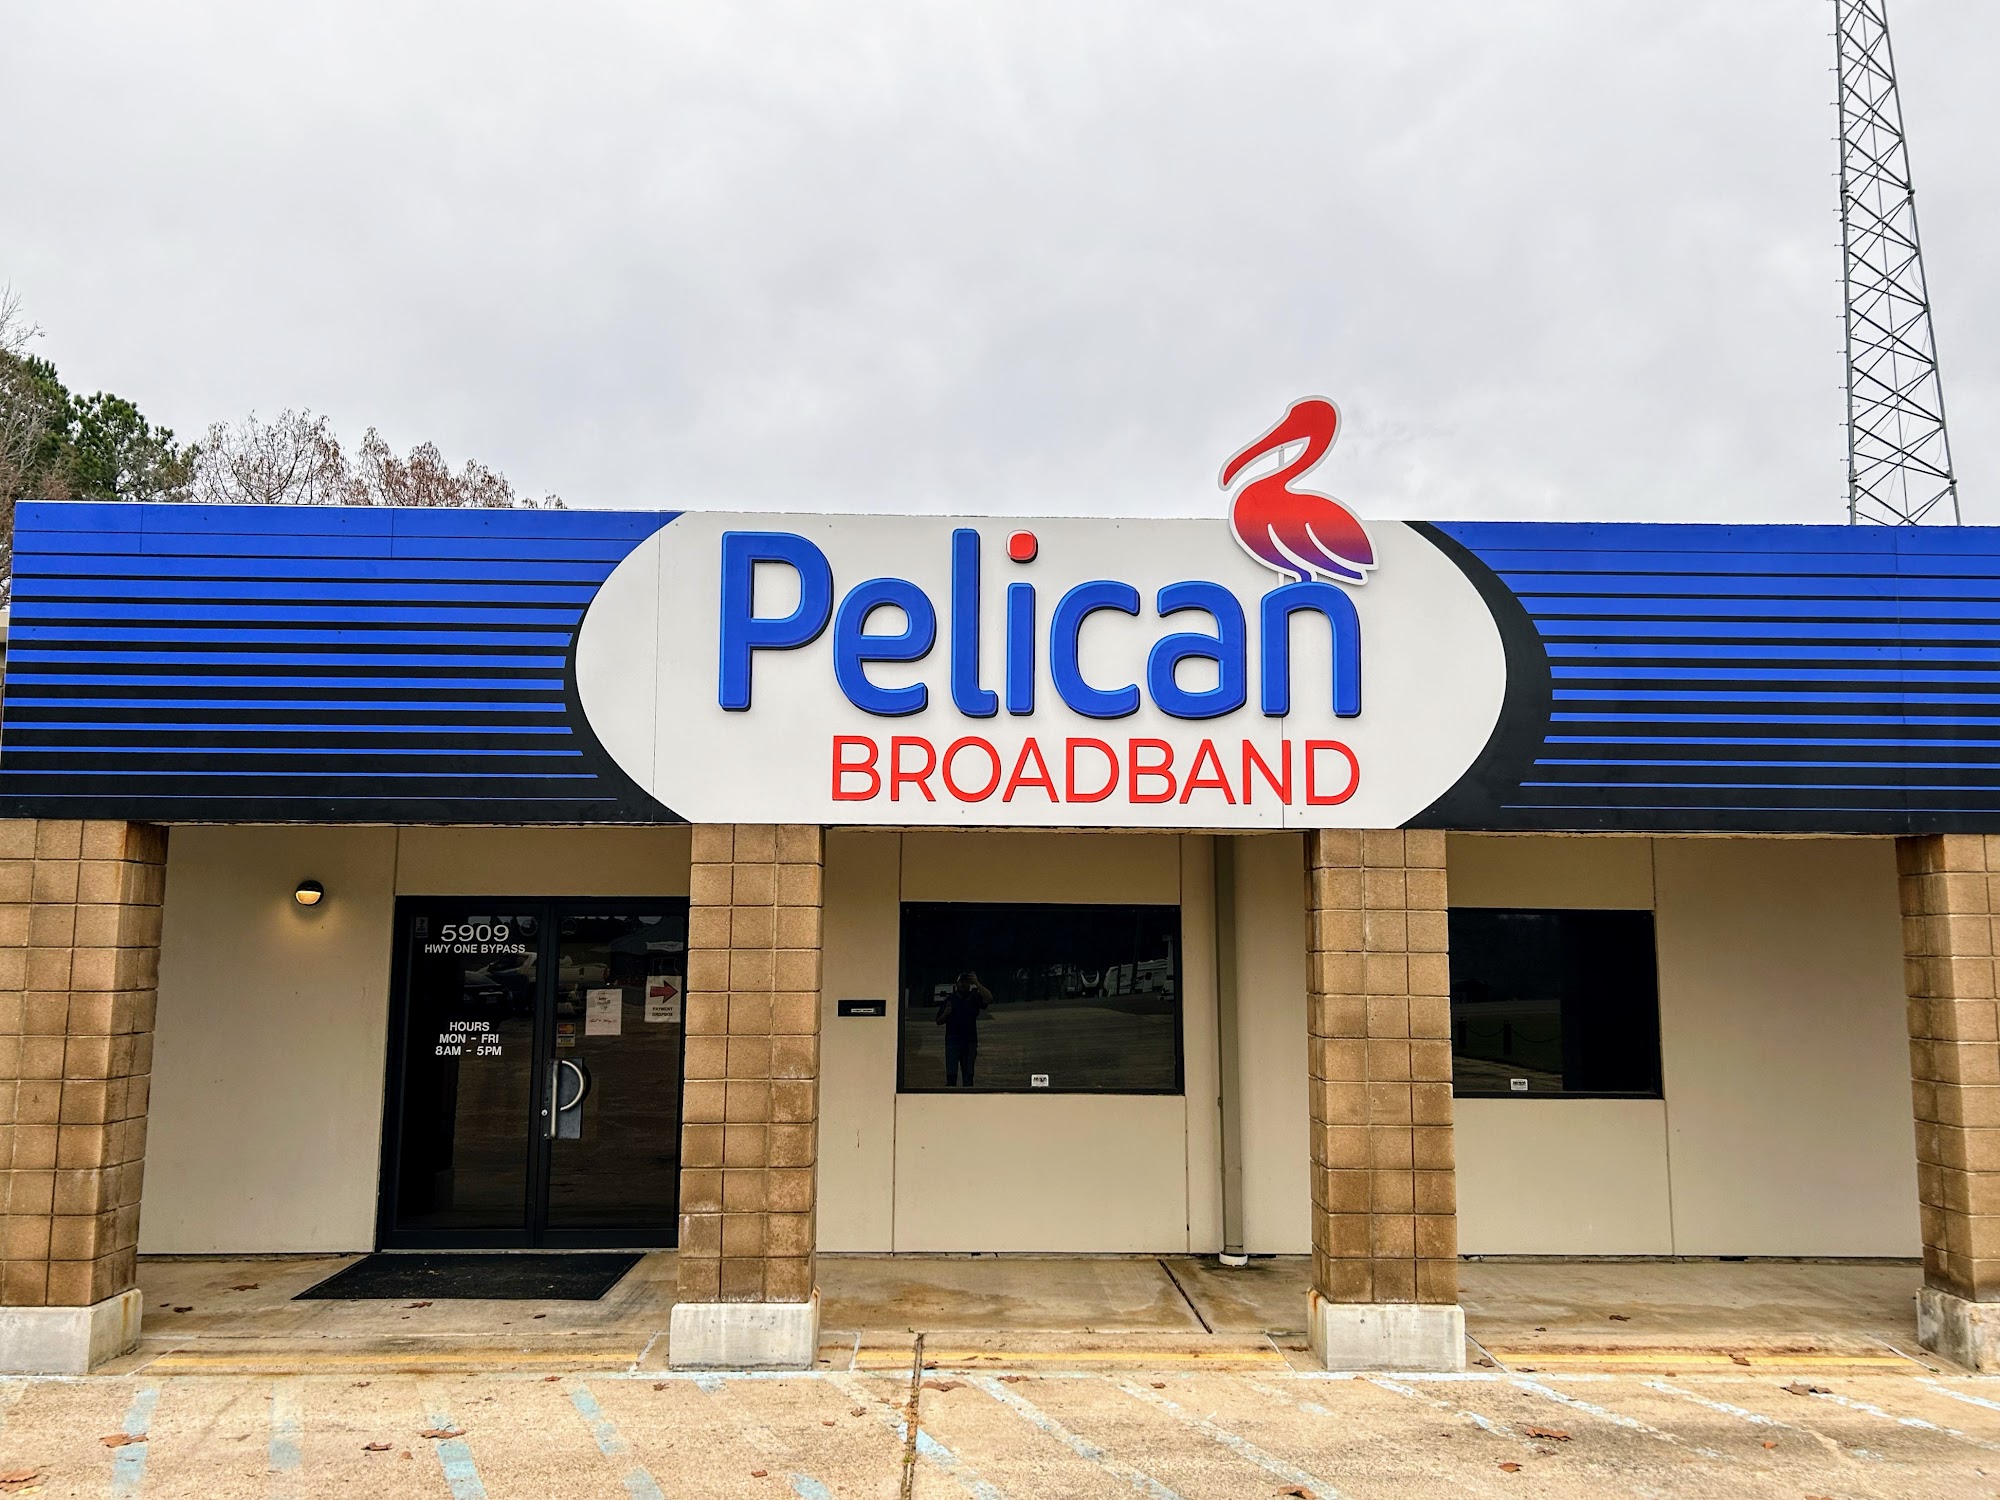 Pelican Broadband